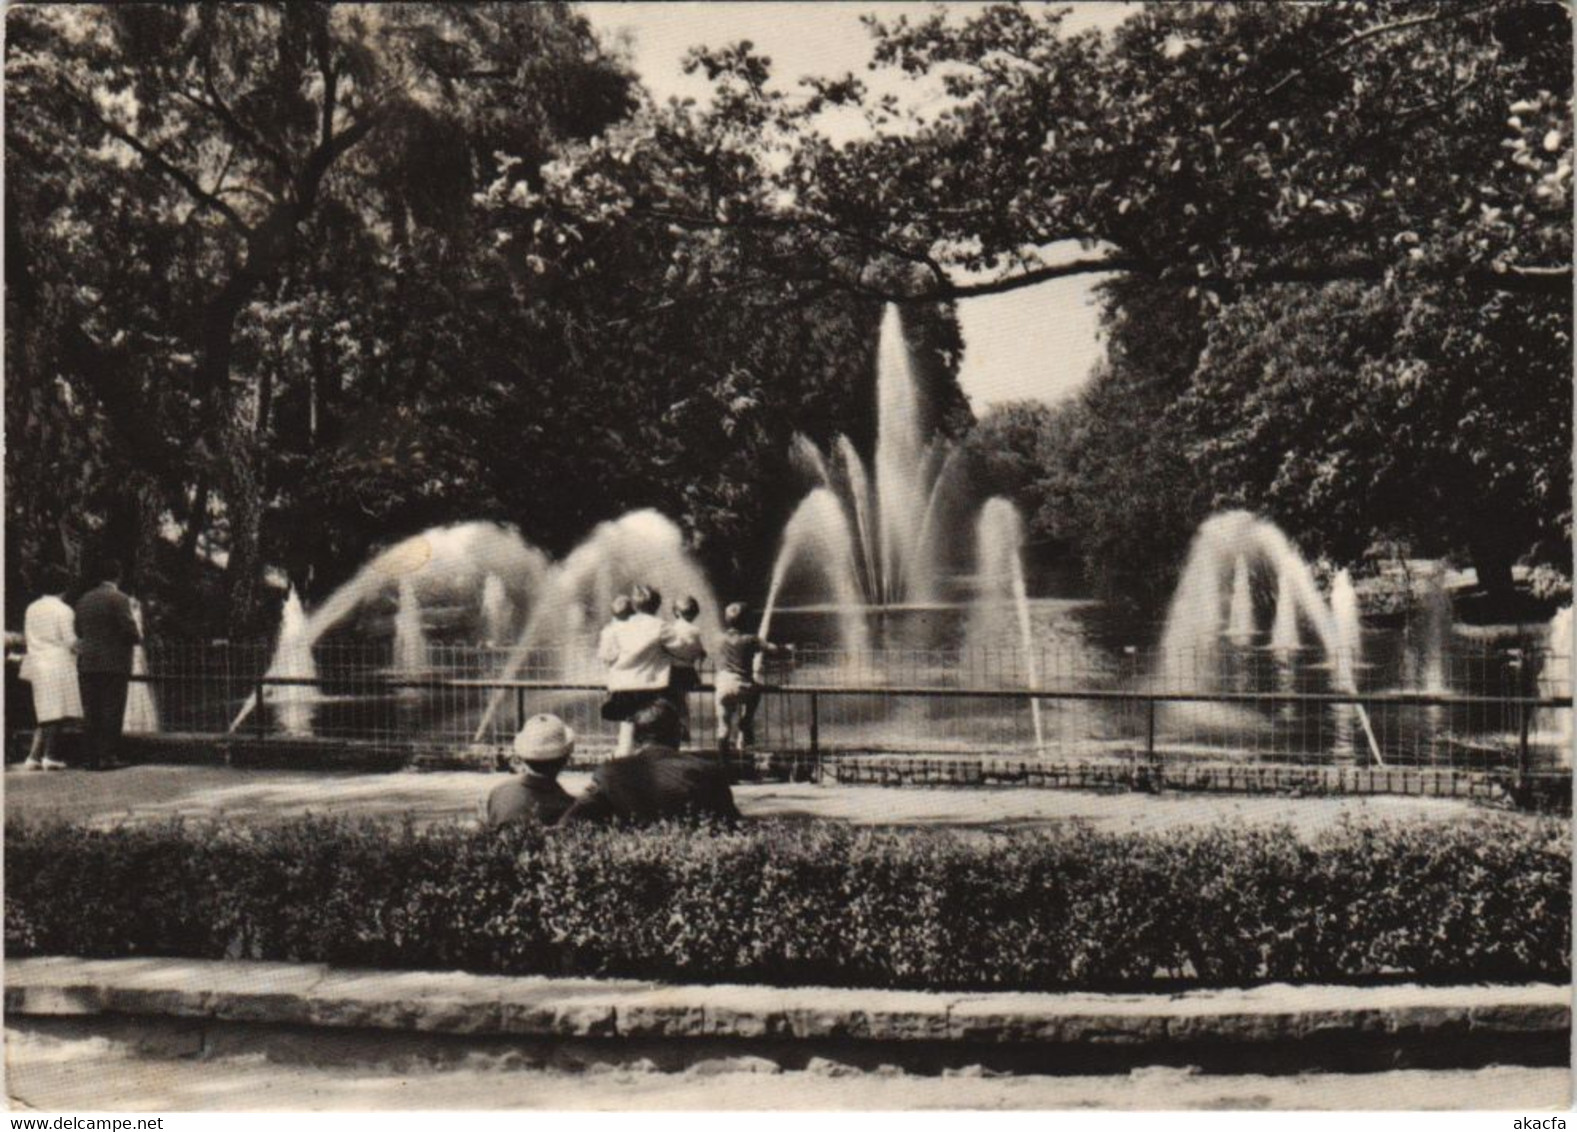 CPA AK Moers Wasserspiele Im Schlosspark GERMANY (1079996) - Mörs